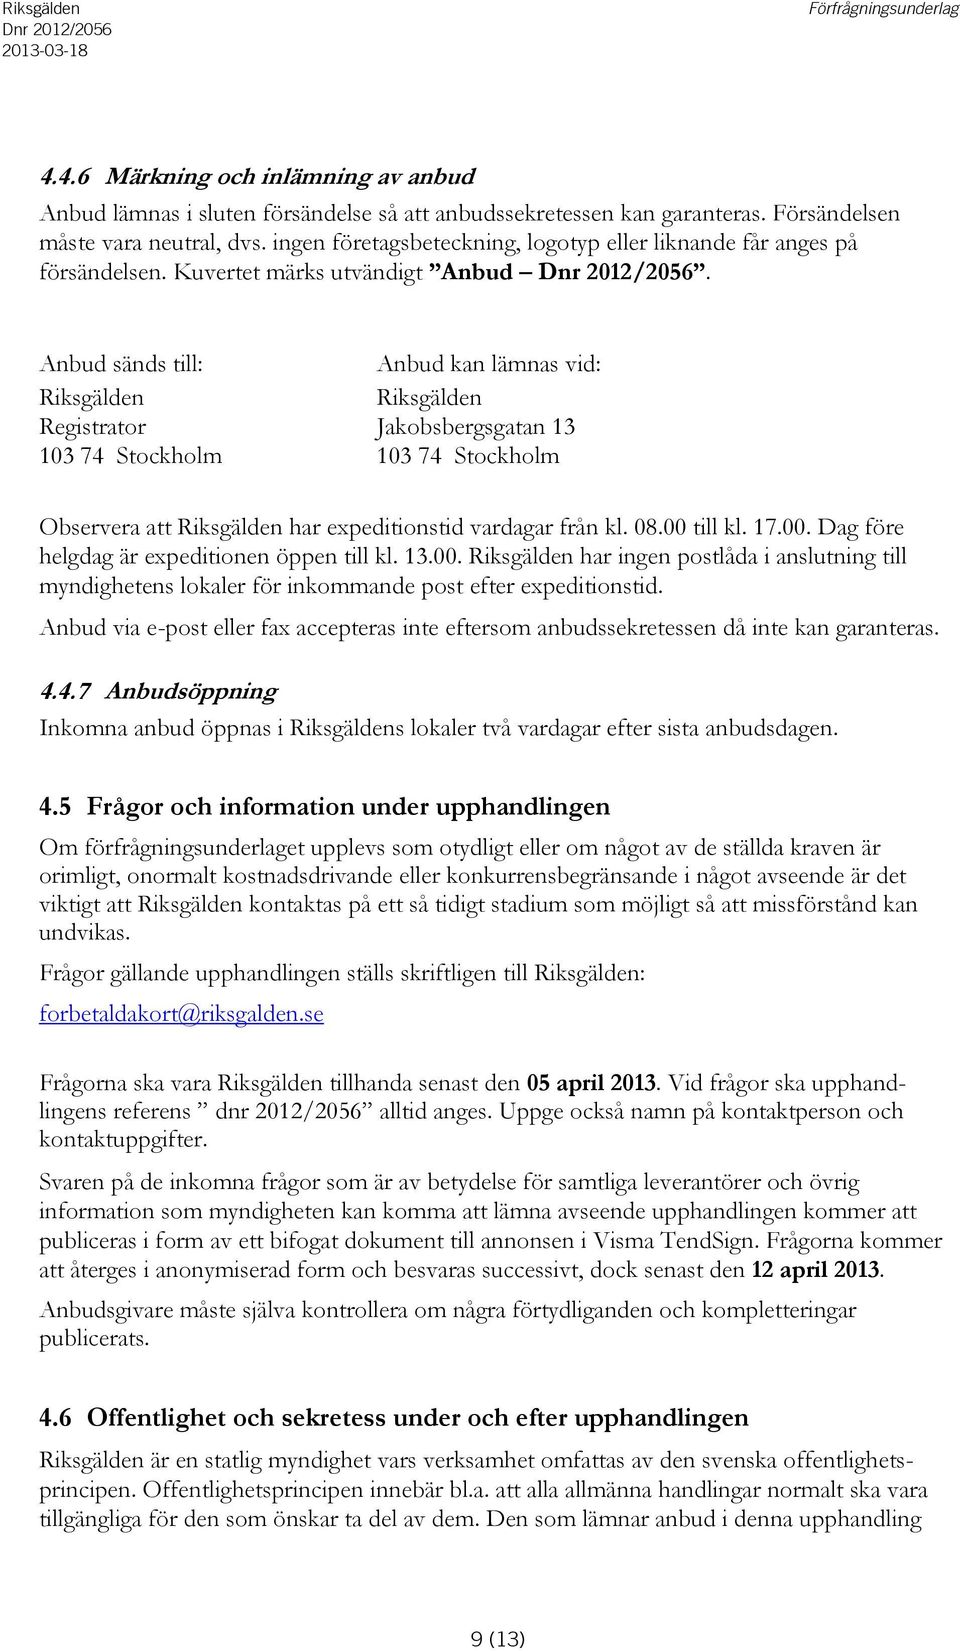 Anbud sänds till: Riksgälden Registrator 103 74 Stockholm Anbud kan lämnas vid: Riksgälden kobsbergsgatan 13 103 74 Stockholm Observera att Riksgälden har expeditionstid vardagar från kl. 08.